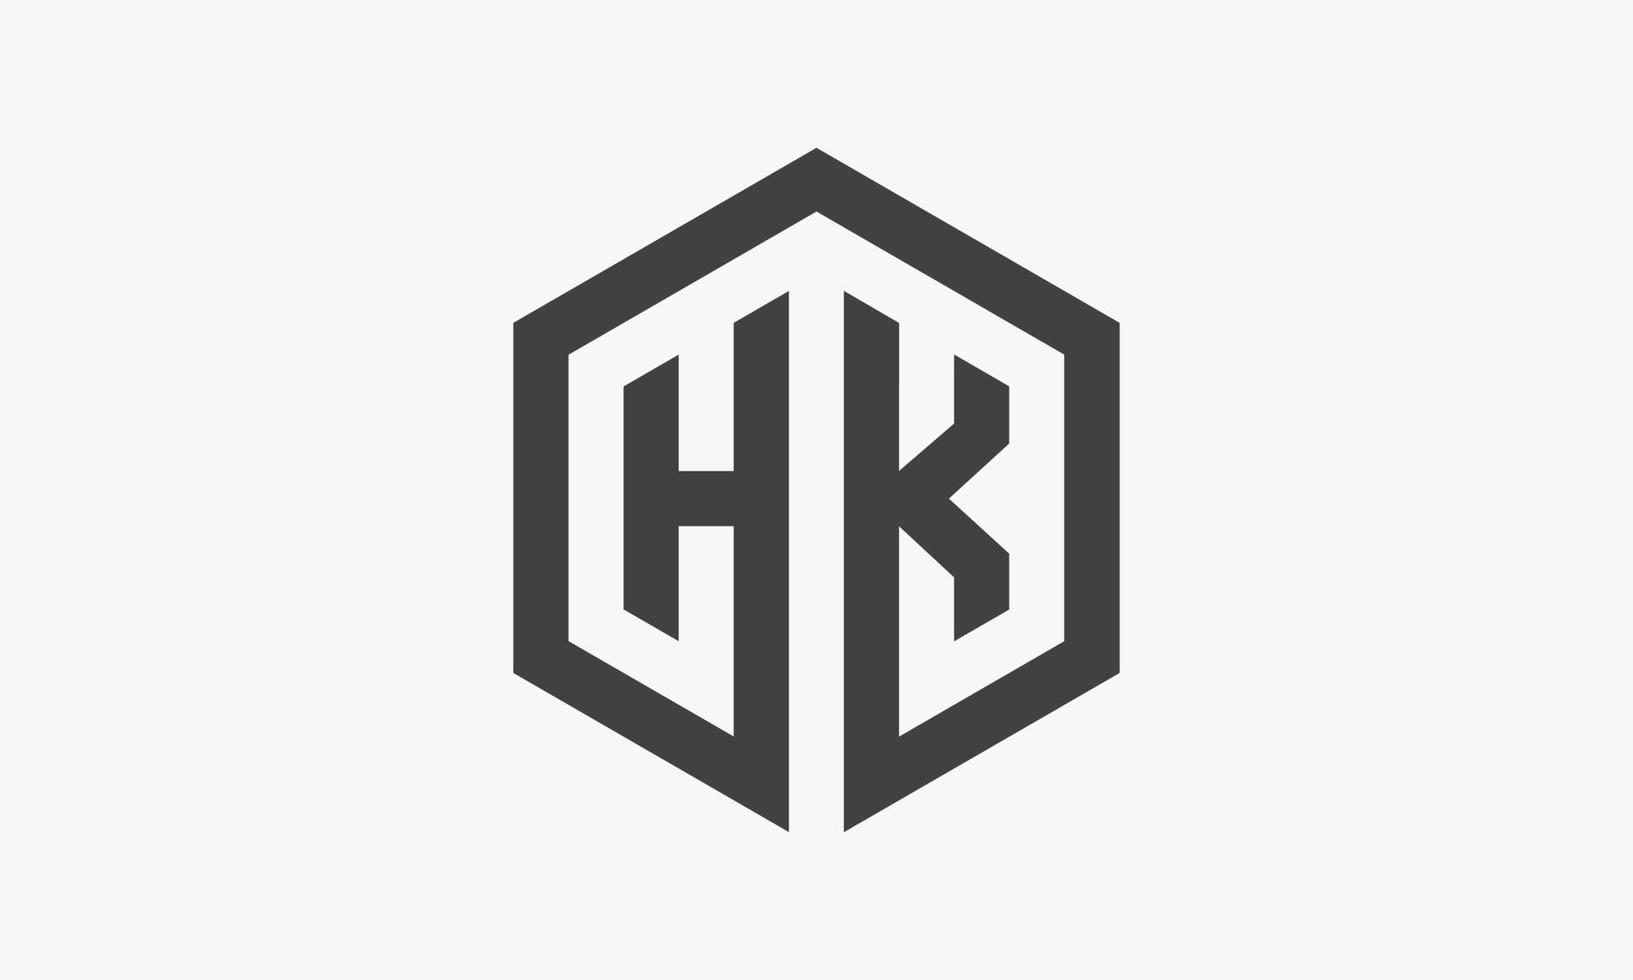 HK zeshoek brief logo geïsoleerd op een witte achtergrond. vector